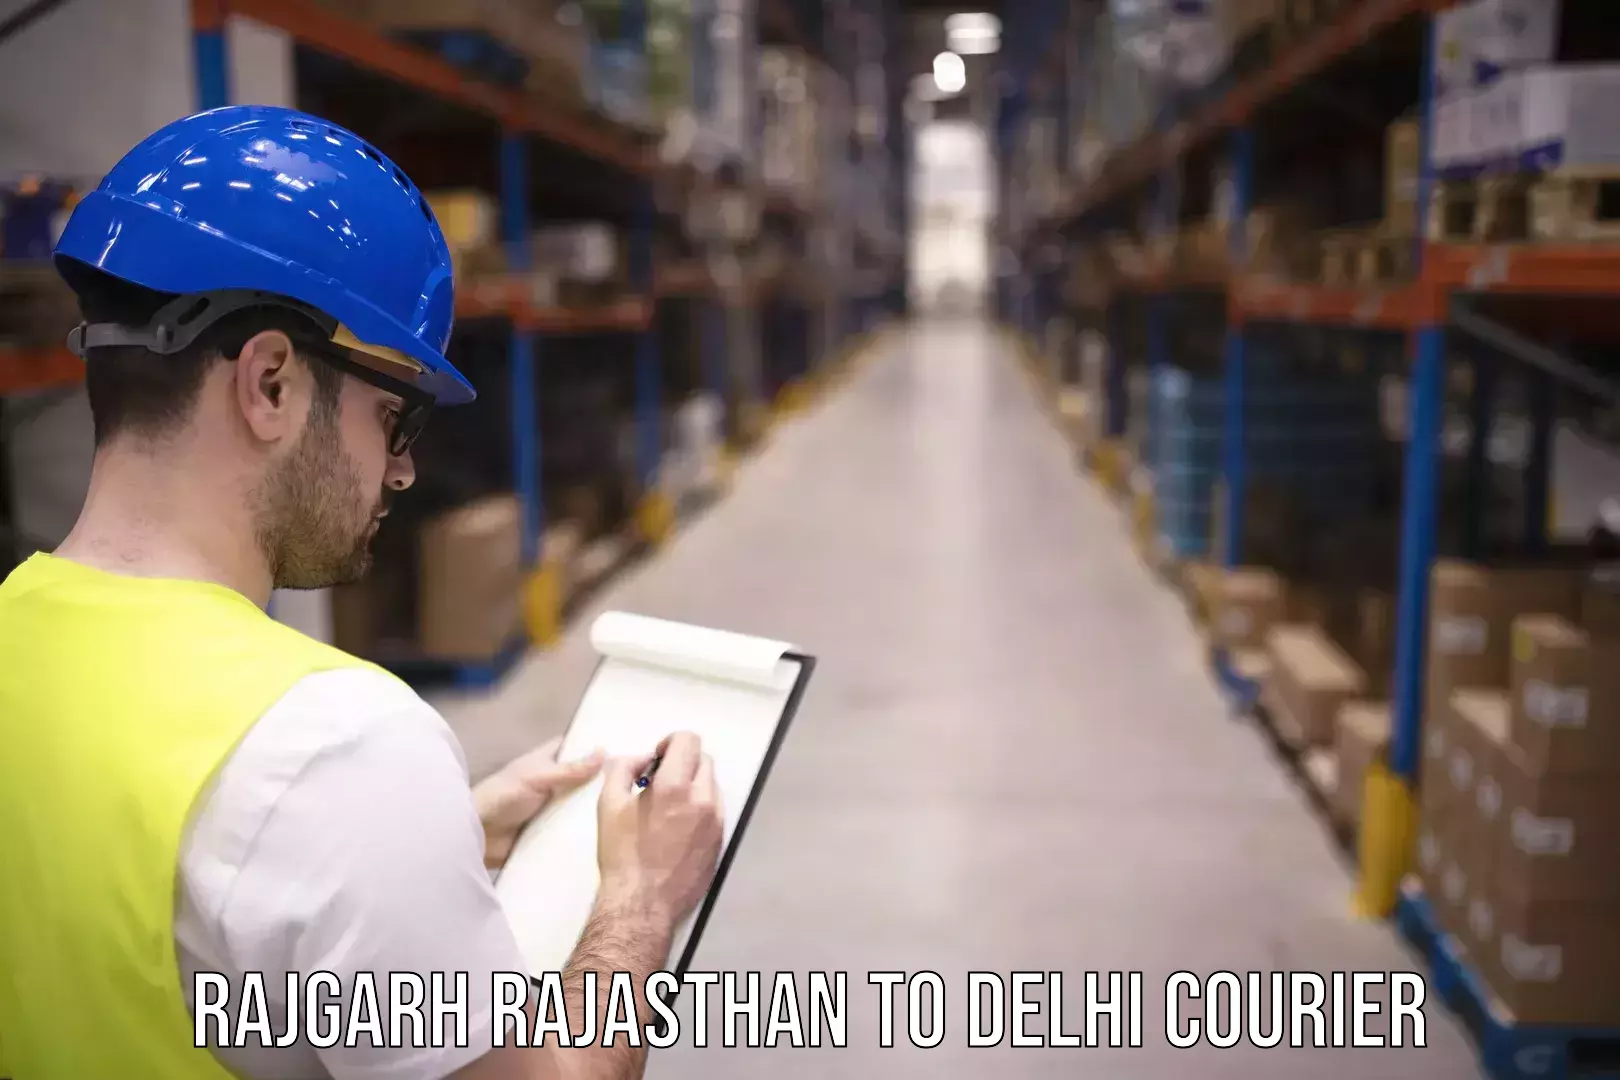 Urban courier service Rajgarh Rajasthan to Jamia Millia Islamia New Delhi